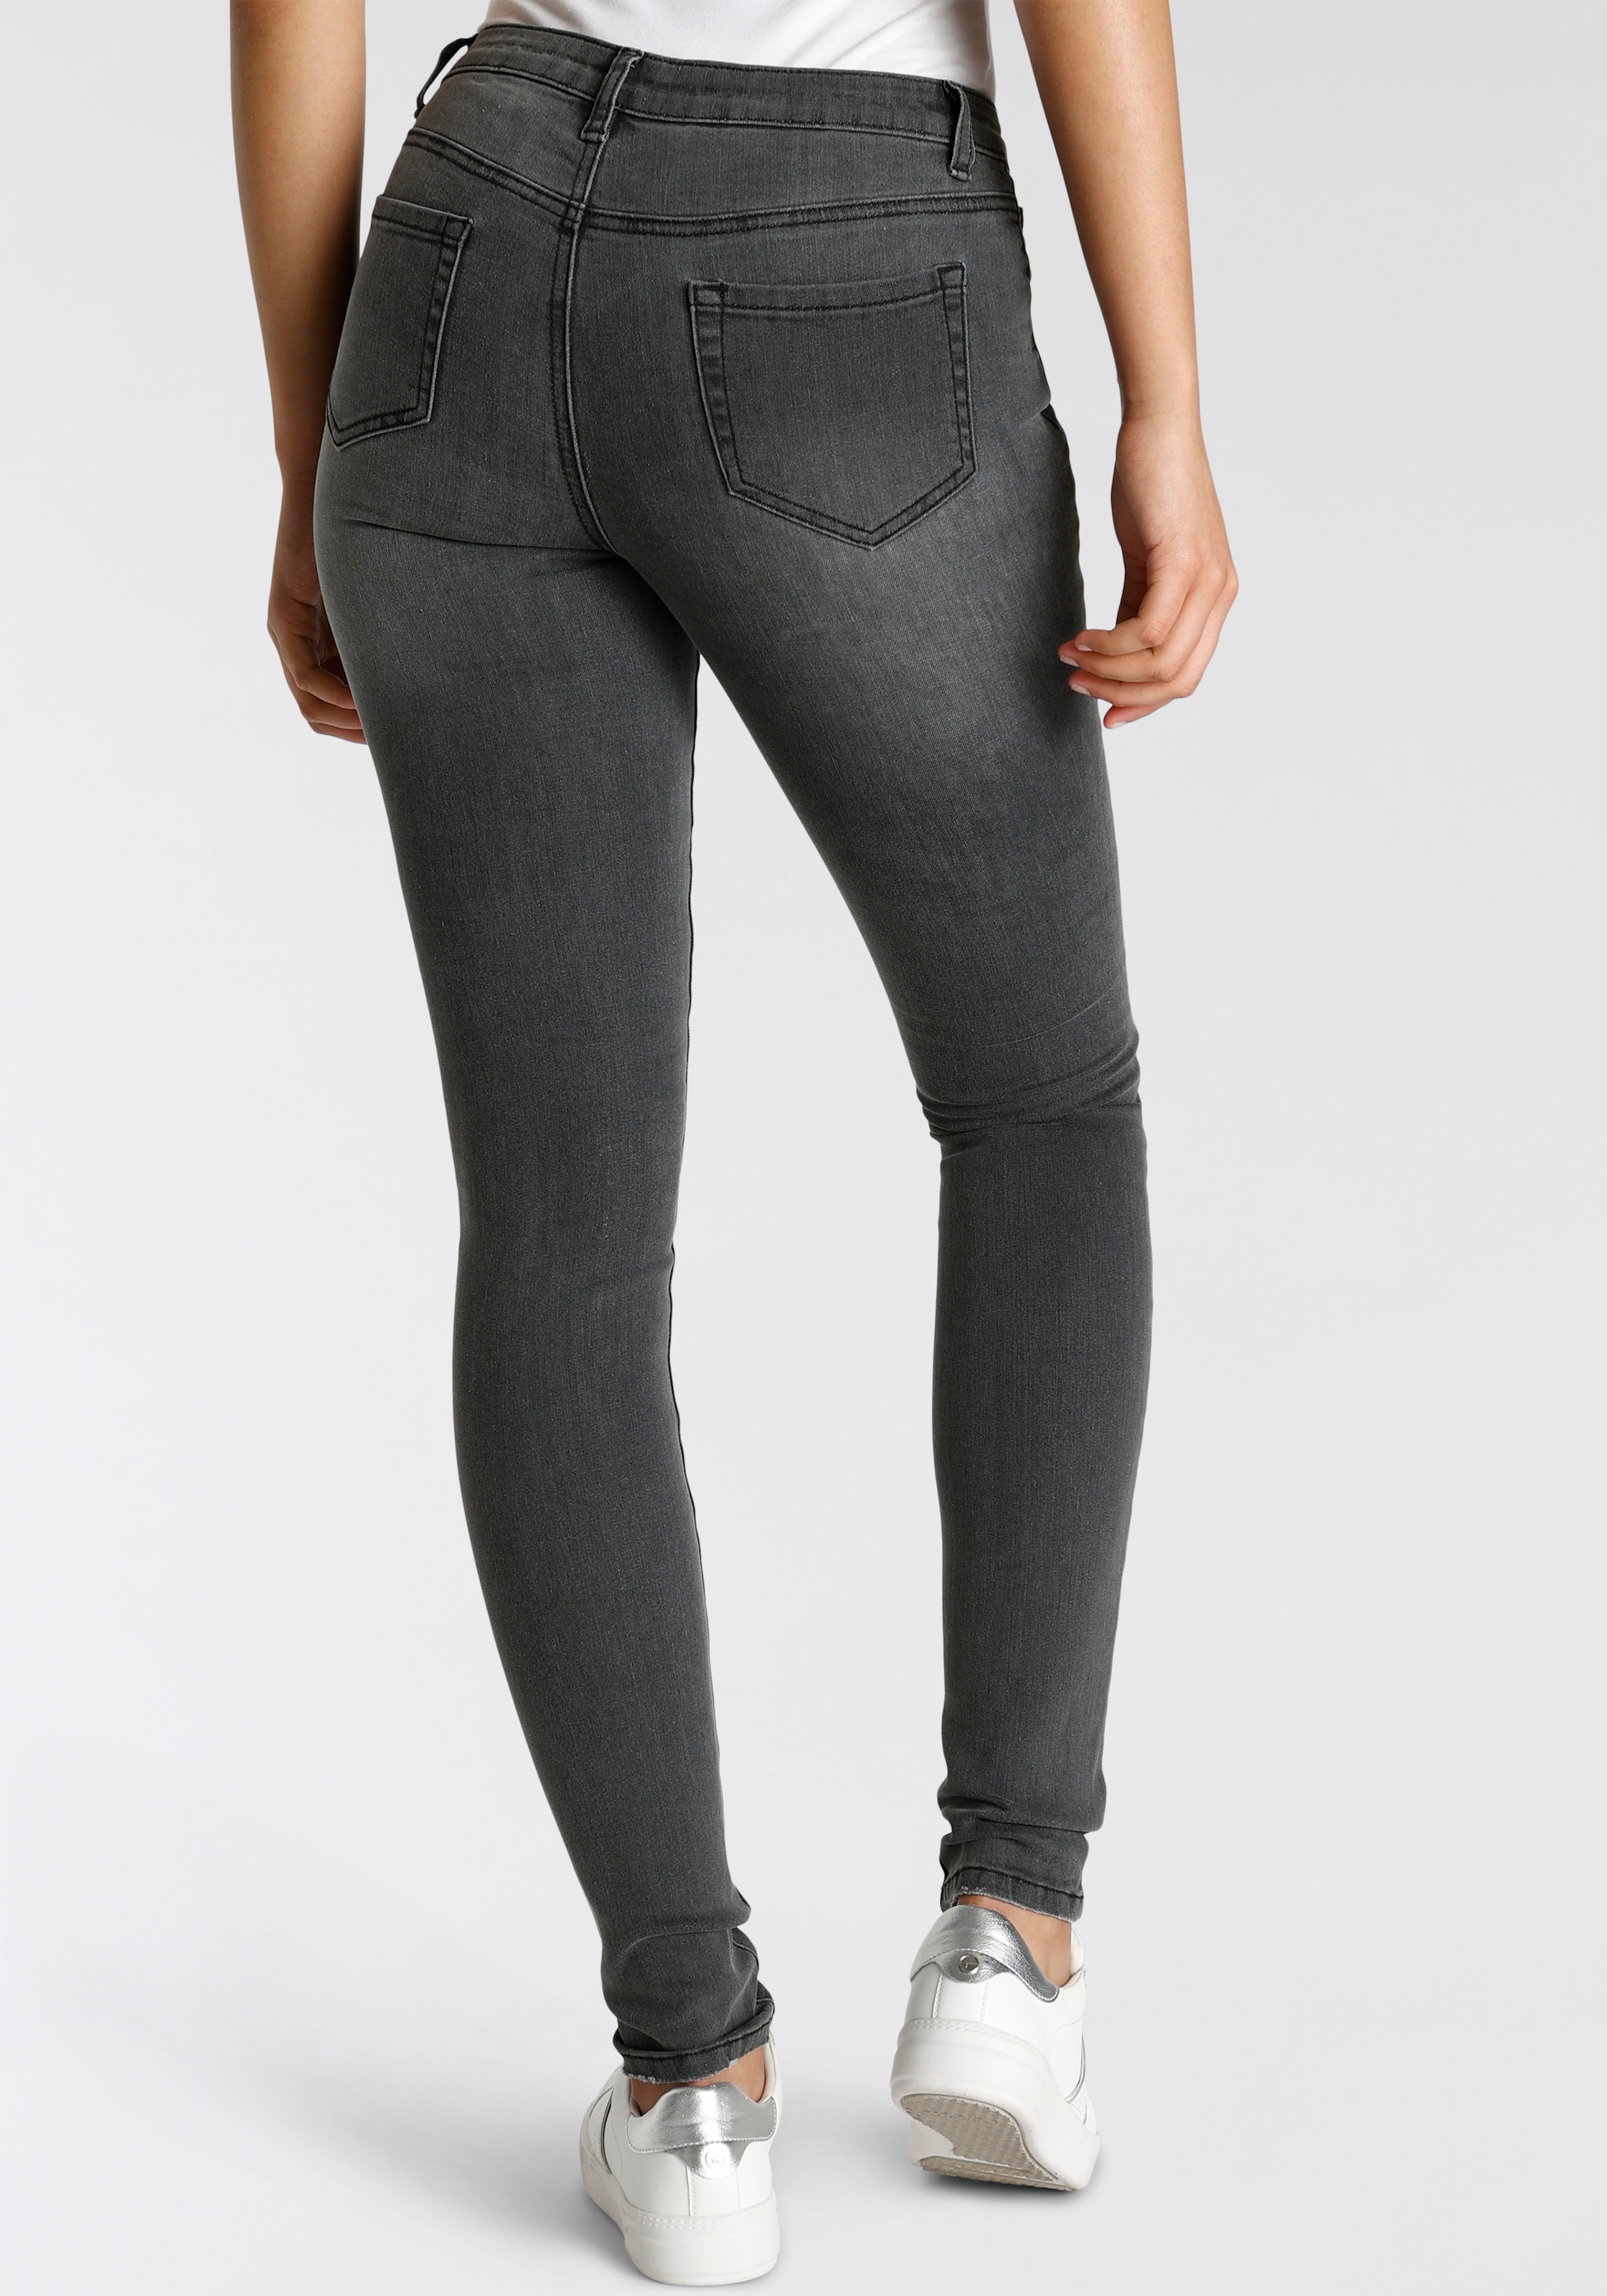 Bruno Banani 5-Pocket-Jeans, Schädel- Applikation NEUE KOLLEKTION shoppen